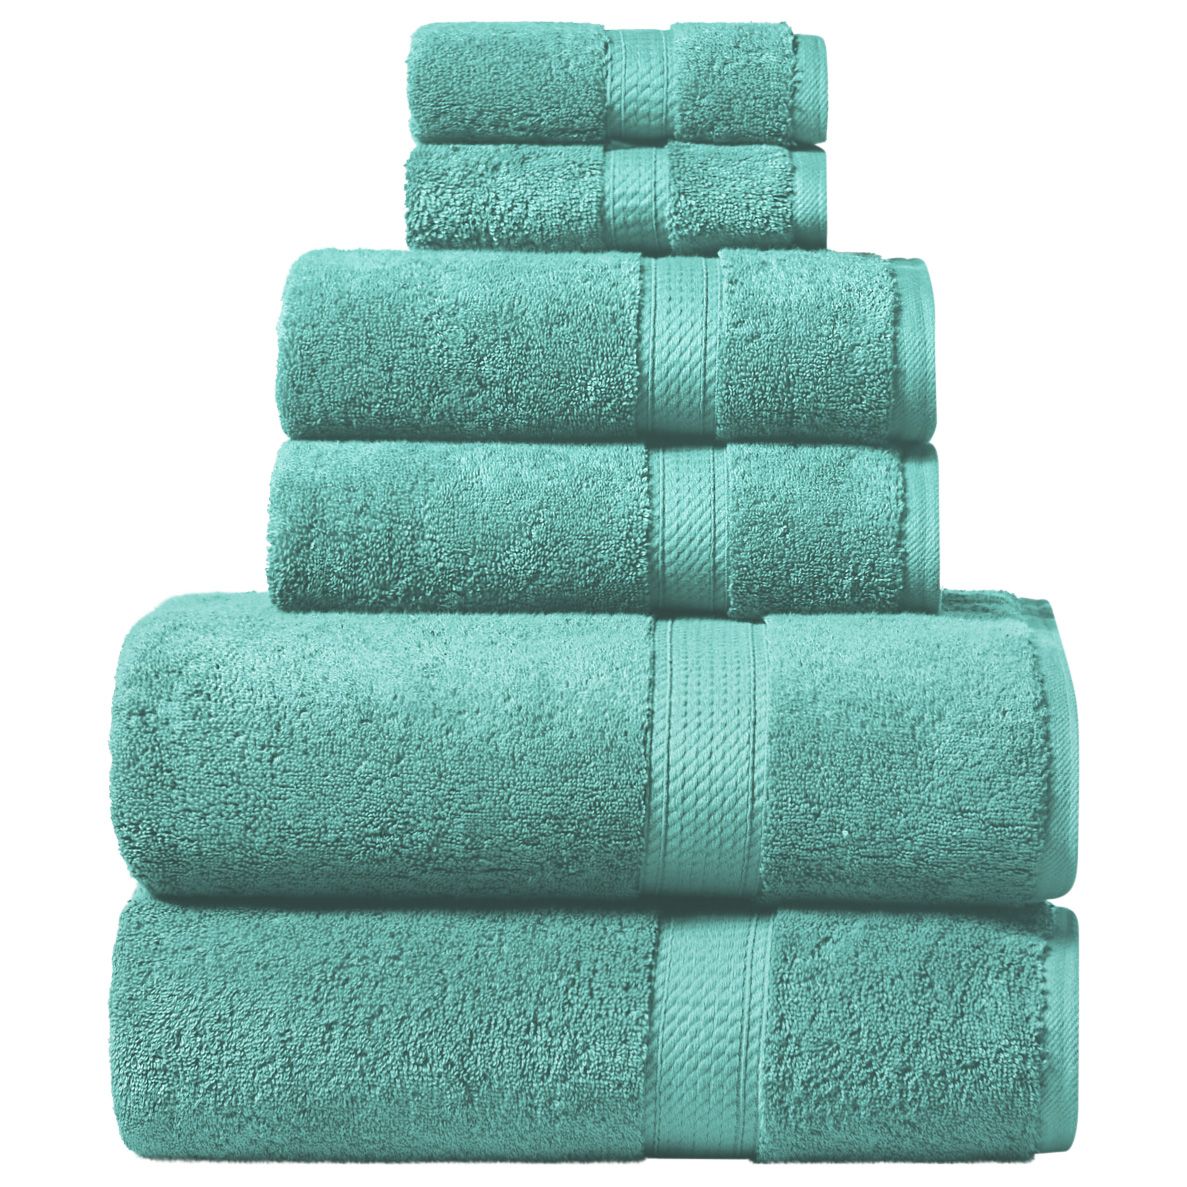  Superior 6-Piece Cotton Towel Set, Includes 2 Bath